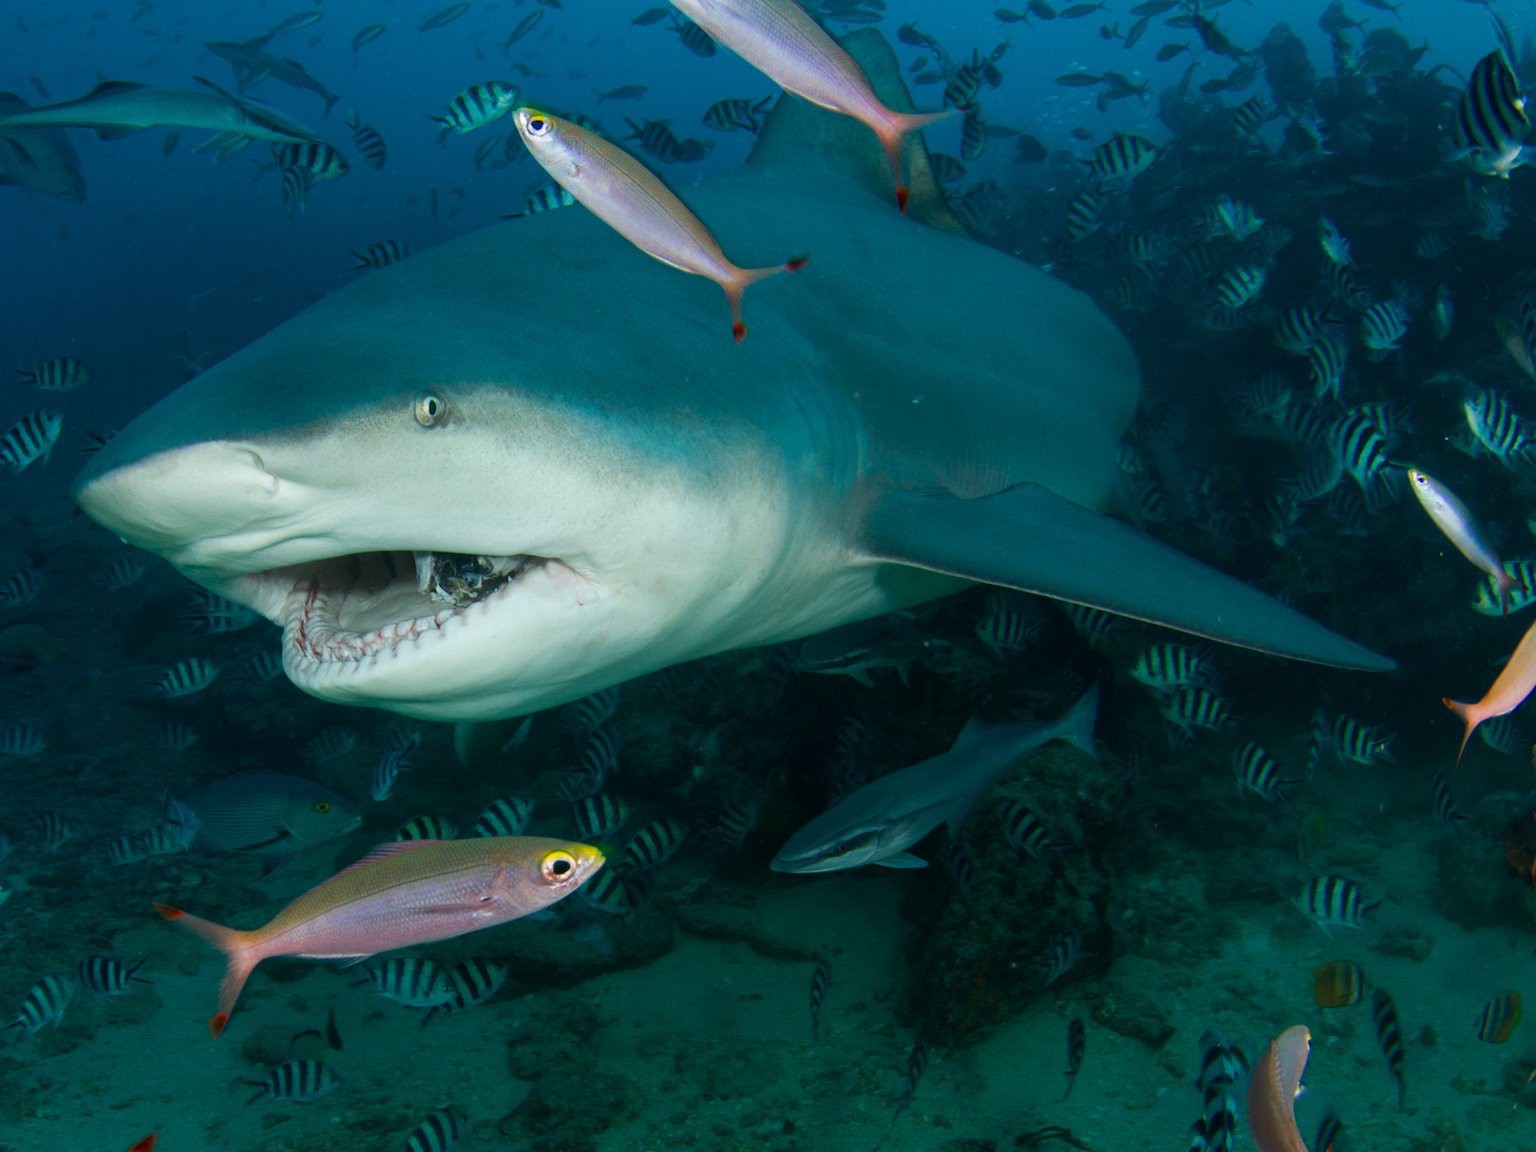 Trải nghiệm sân golf duy nhất có hồ cá mập hung tợn nguy hiểm nhất thế giới - 3